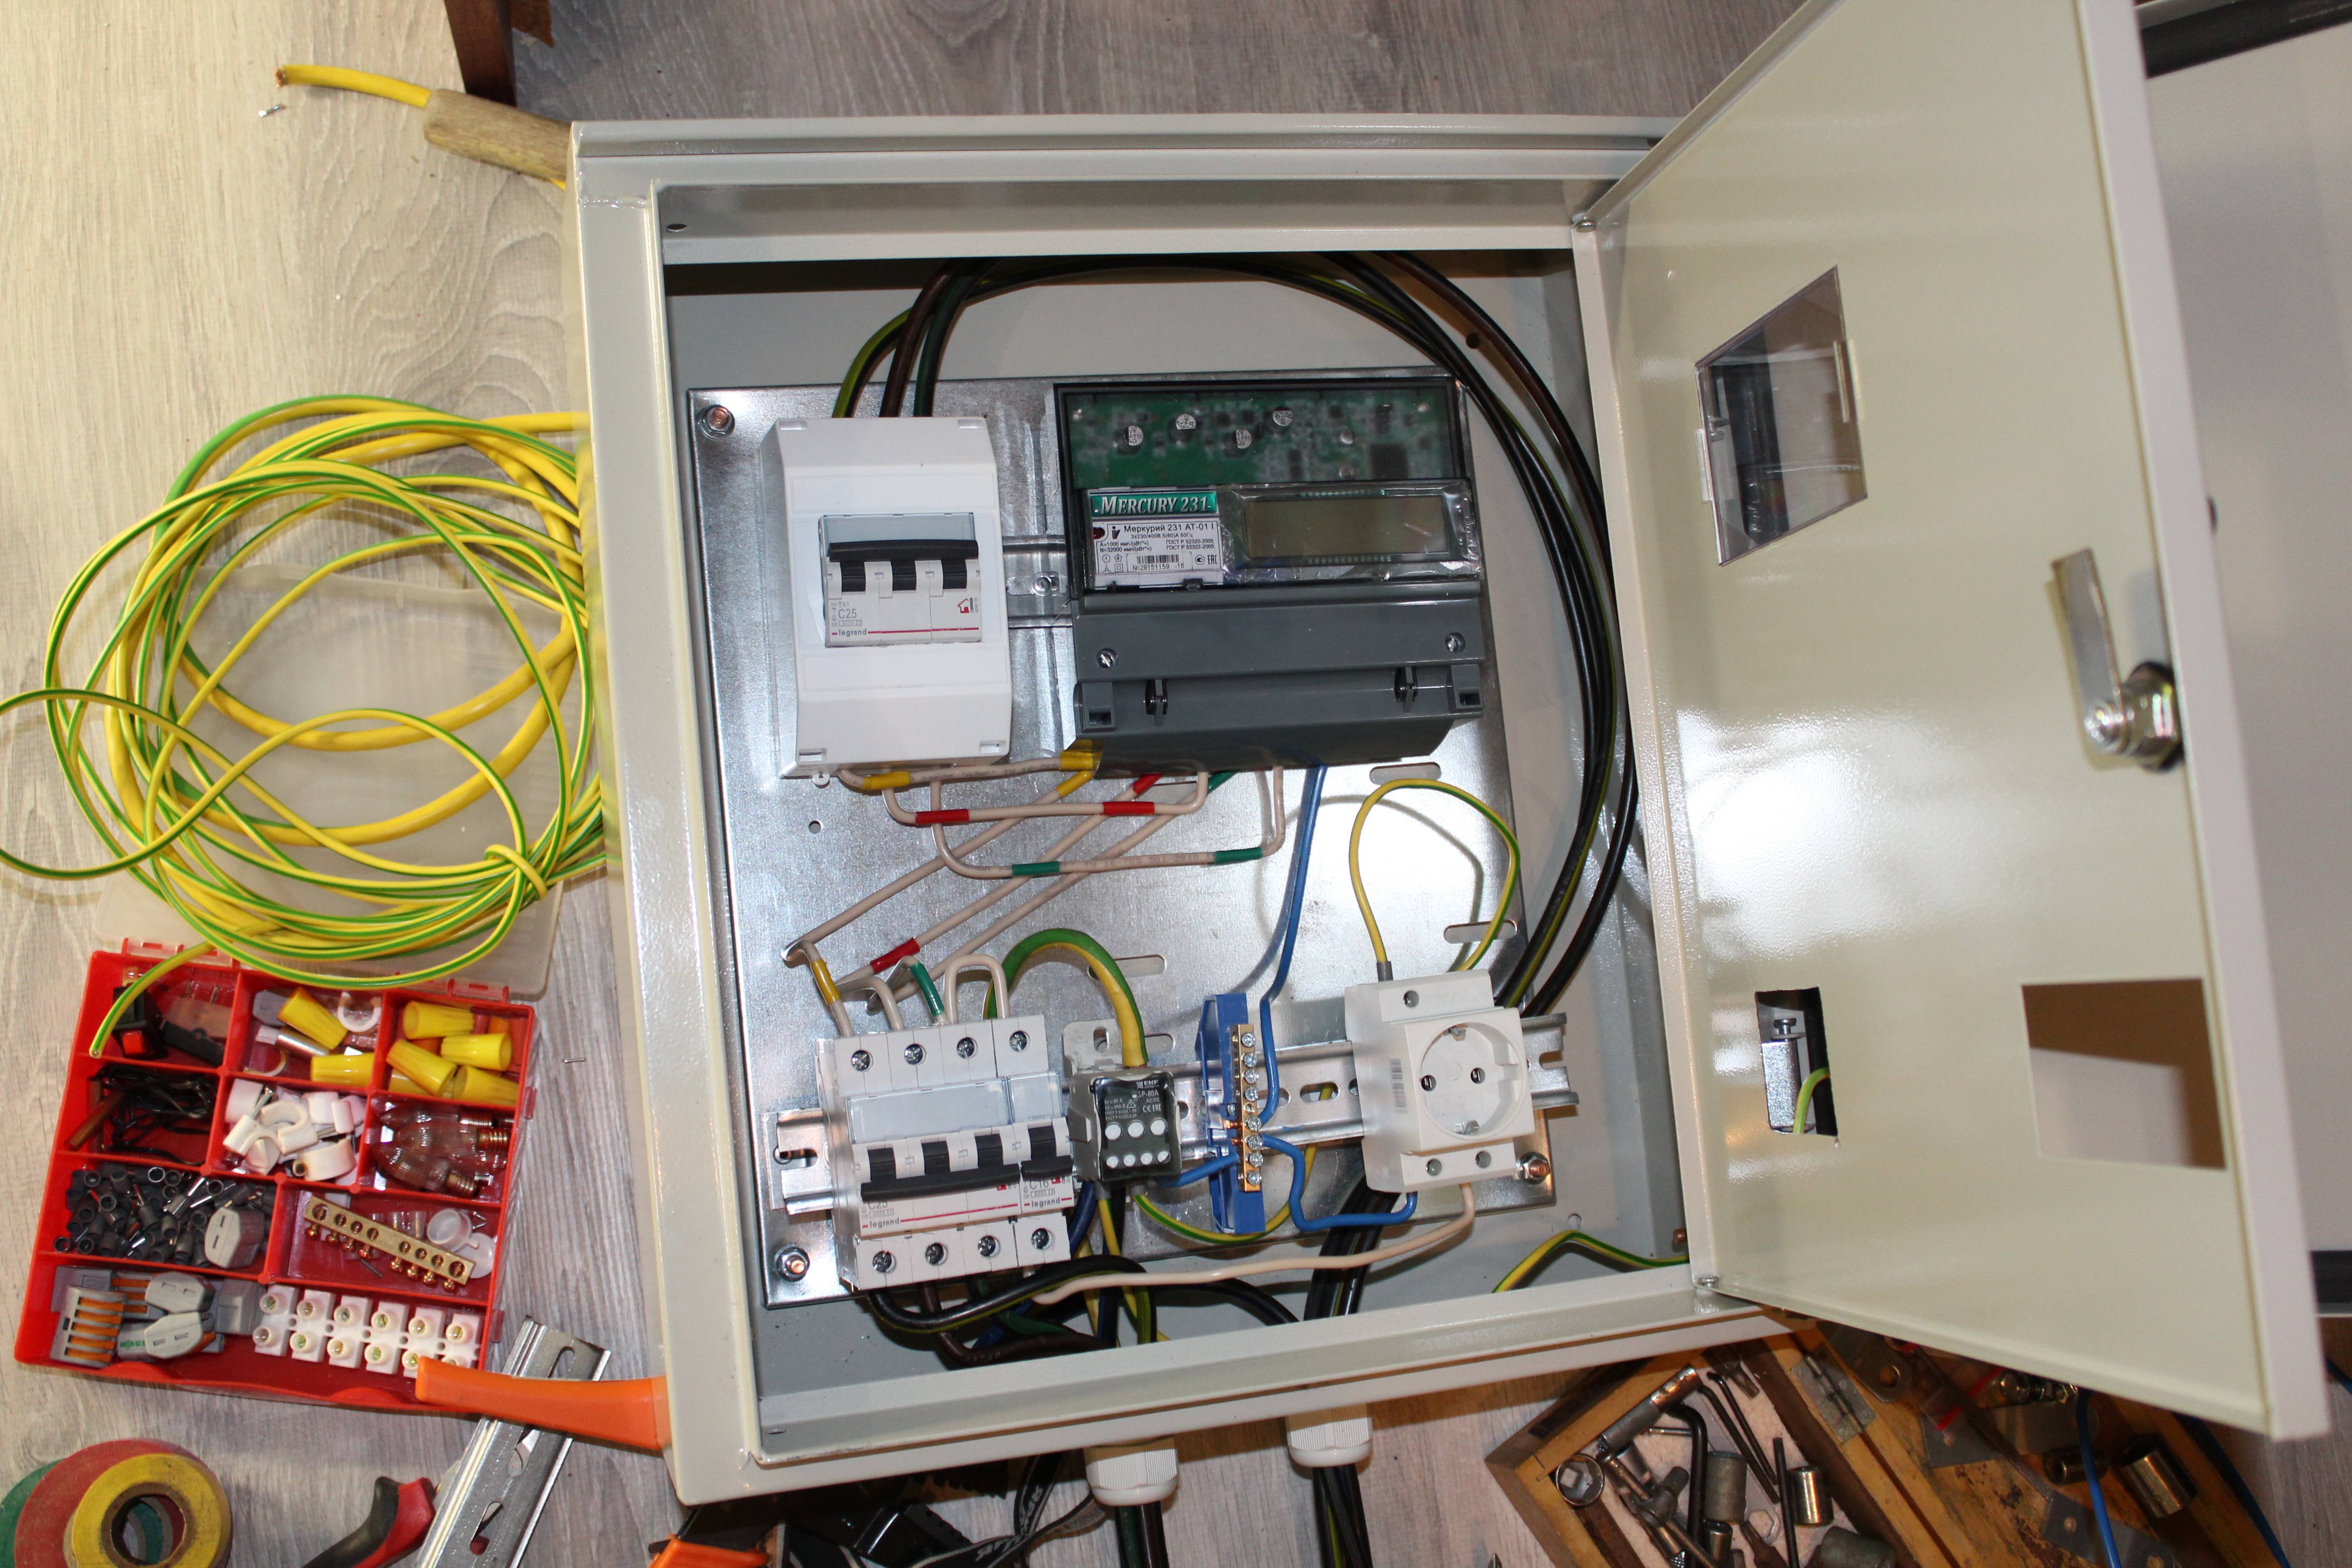 Автоматы в гараж: устройство и подключение электричества в гараже, схема щитка